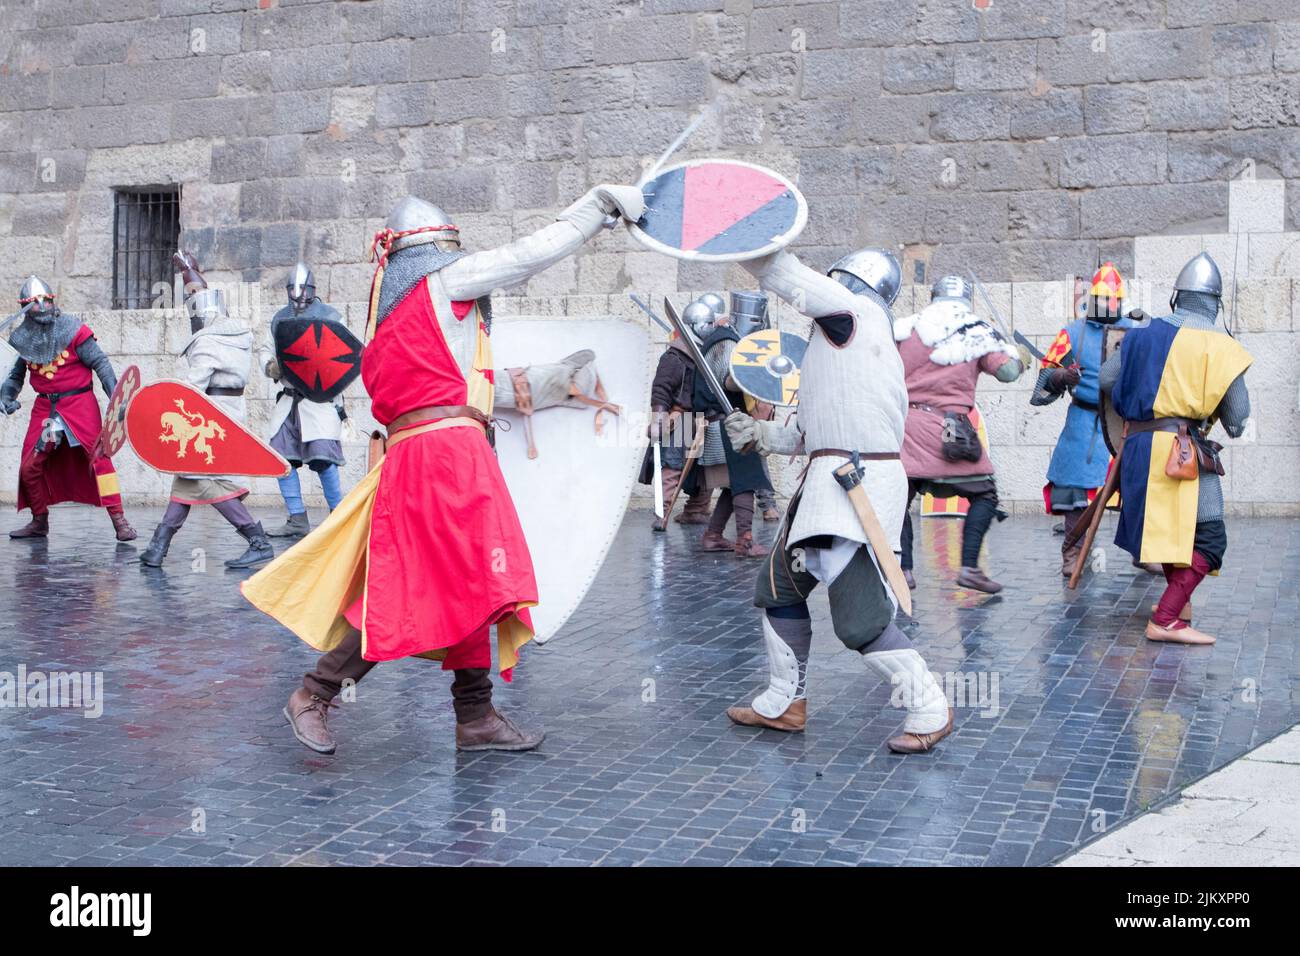 Guerreros Medievales representando una batalla medieval Stock Photo